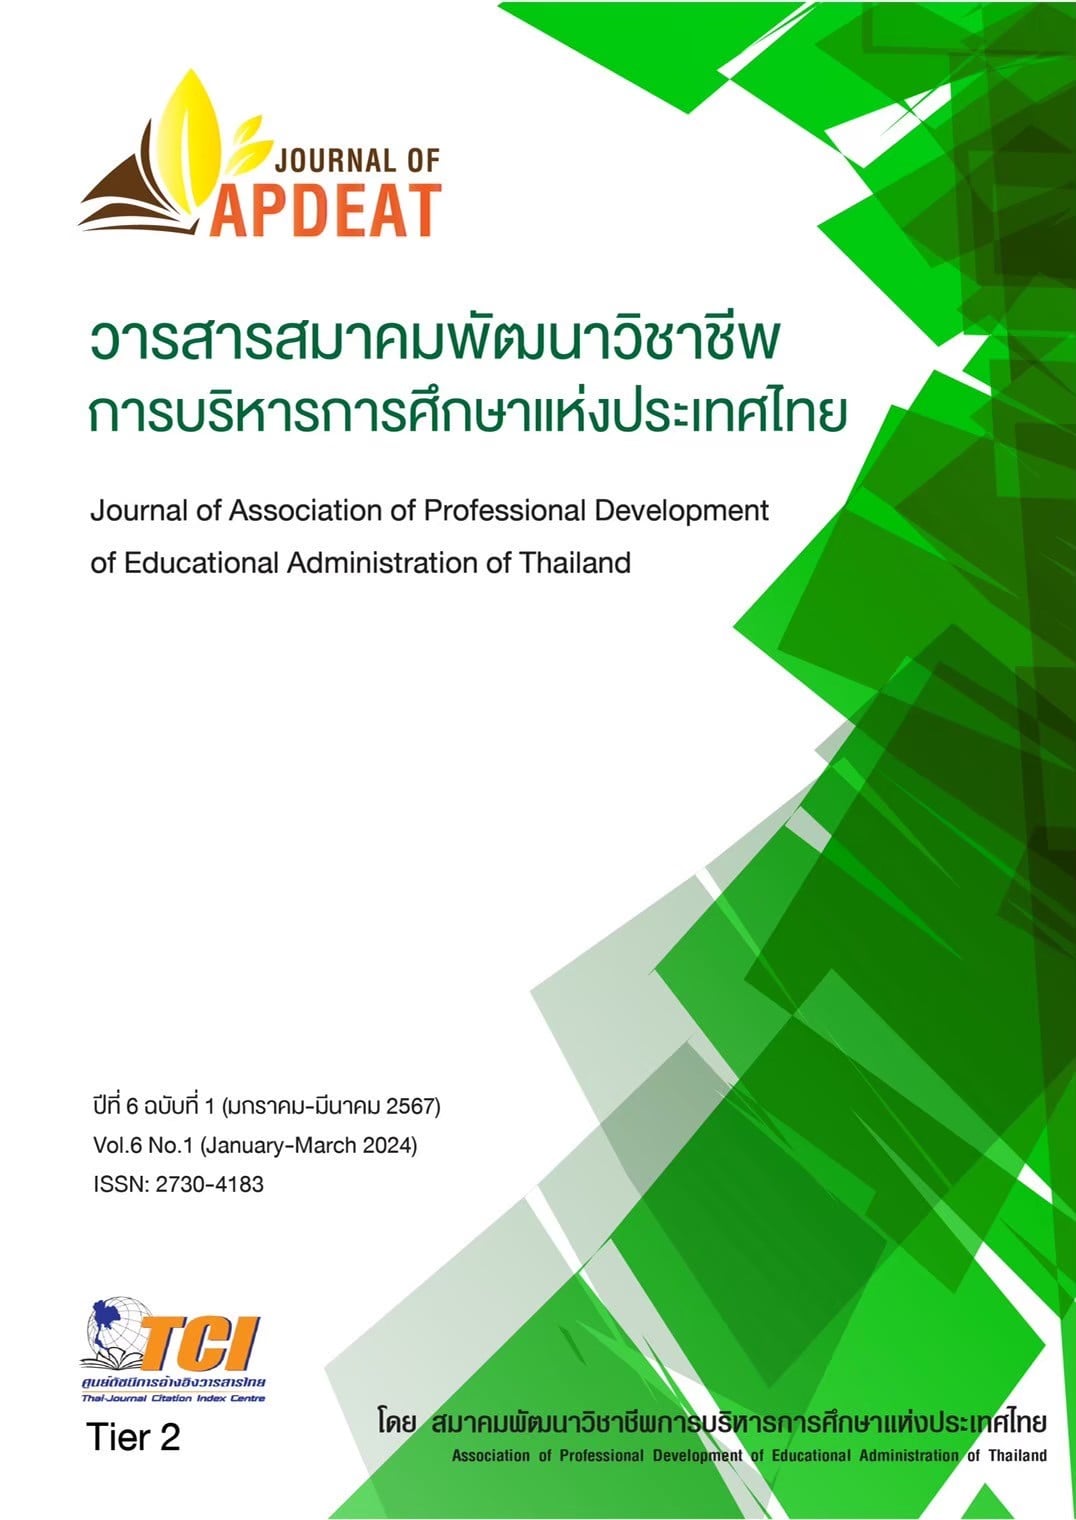 วารสารสมาคมพัฒนาวิชาชีพการบริหารการศึกษาแห่งประเทศไทย ปีที่ 6 ฉบับที่ 1 (มกราคม-มีนาคม 2567)